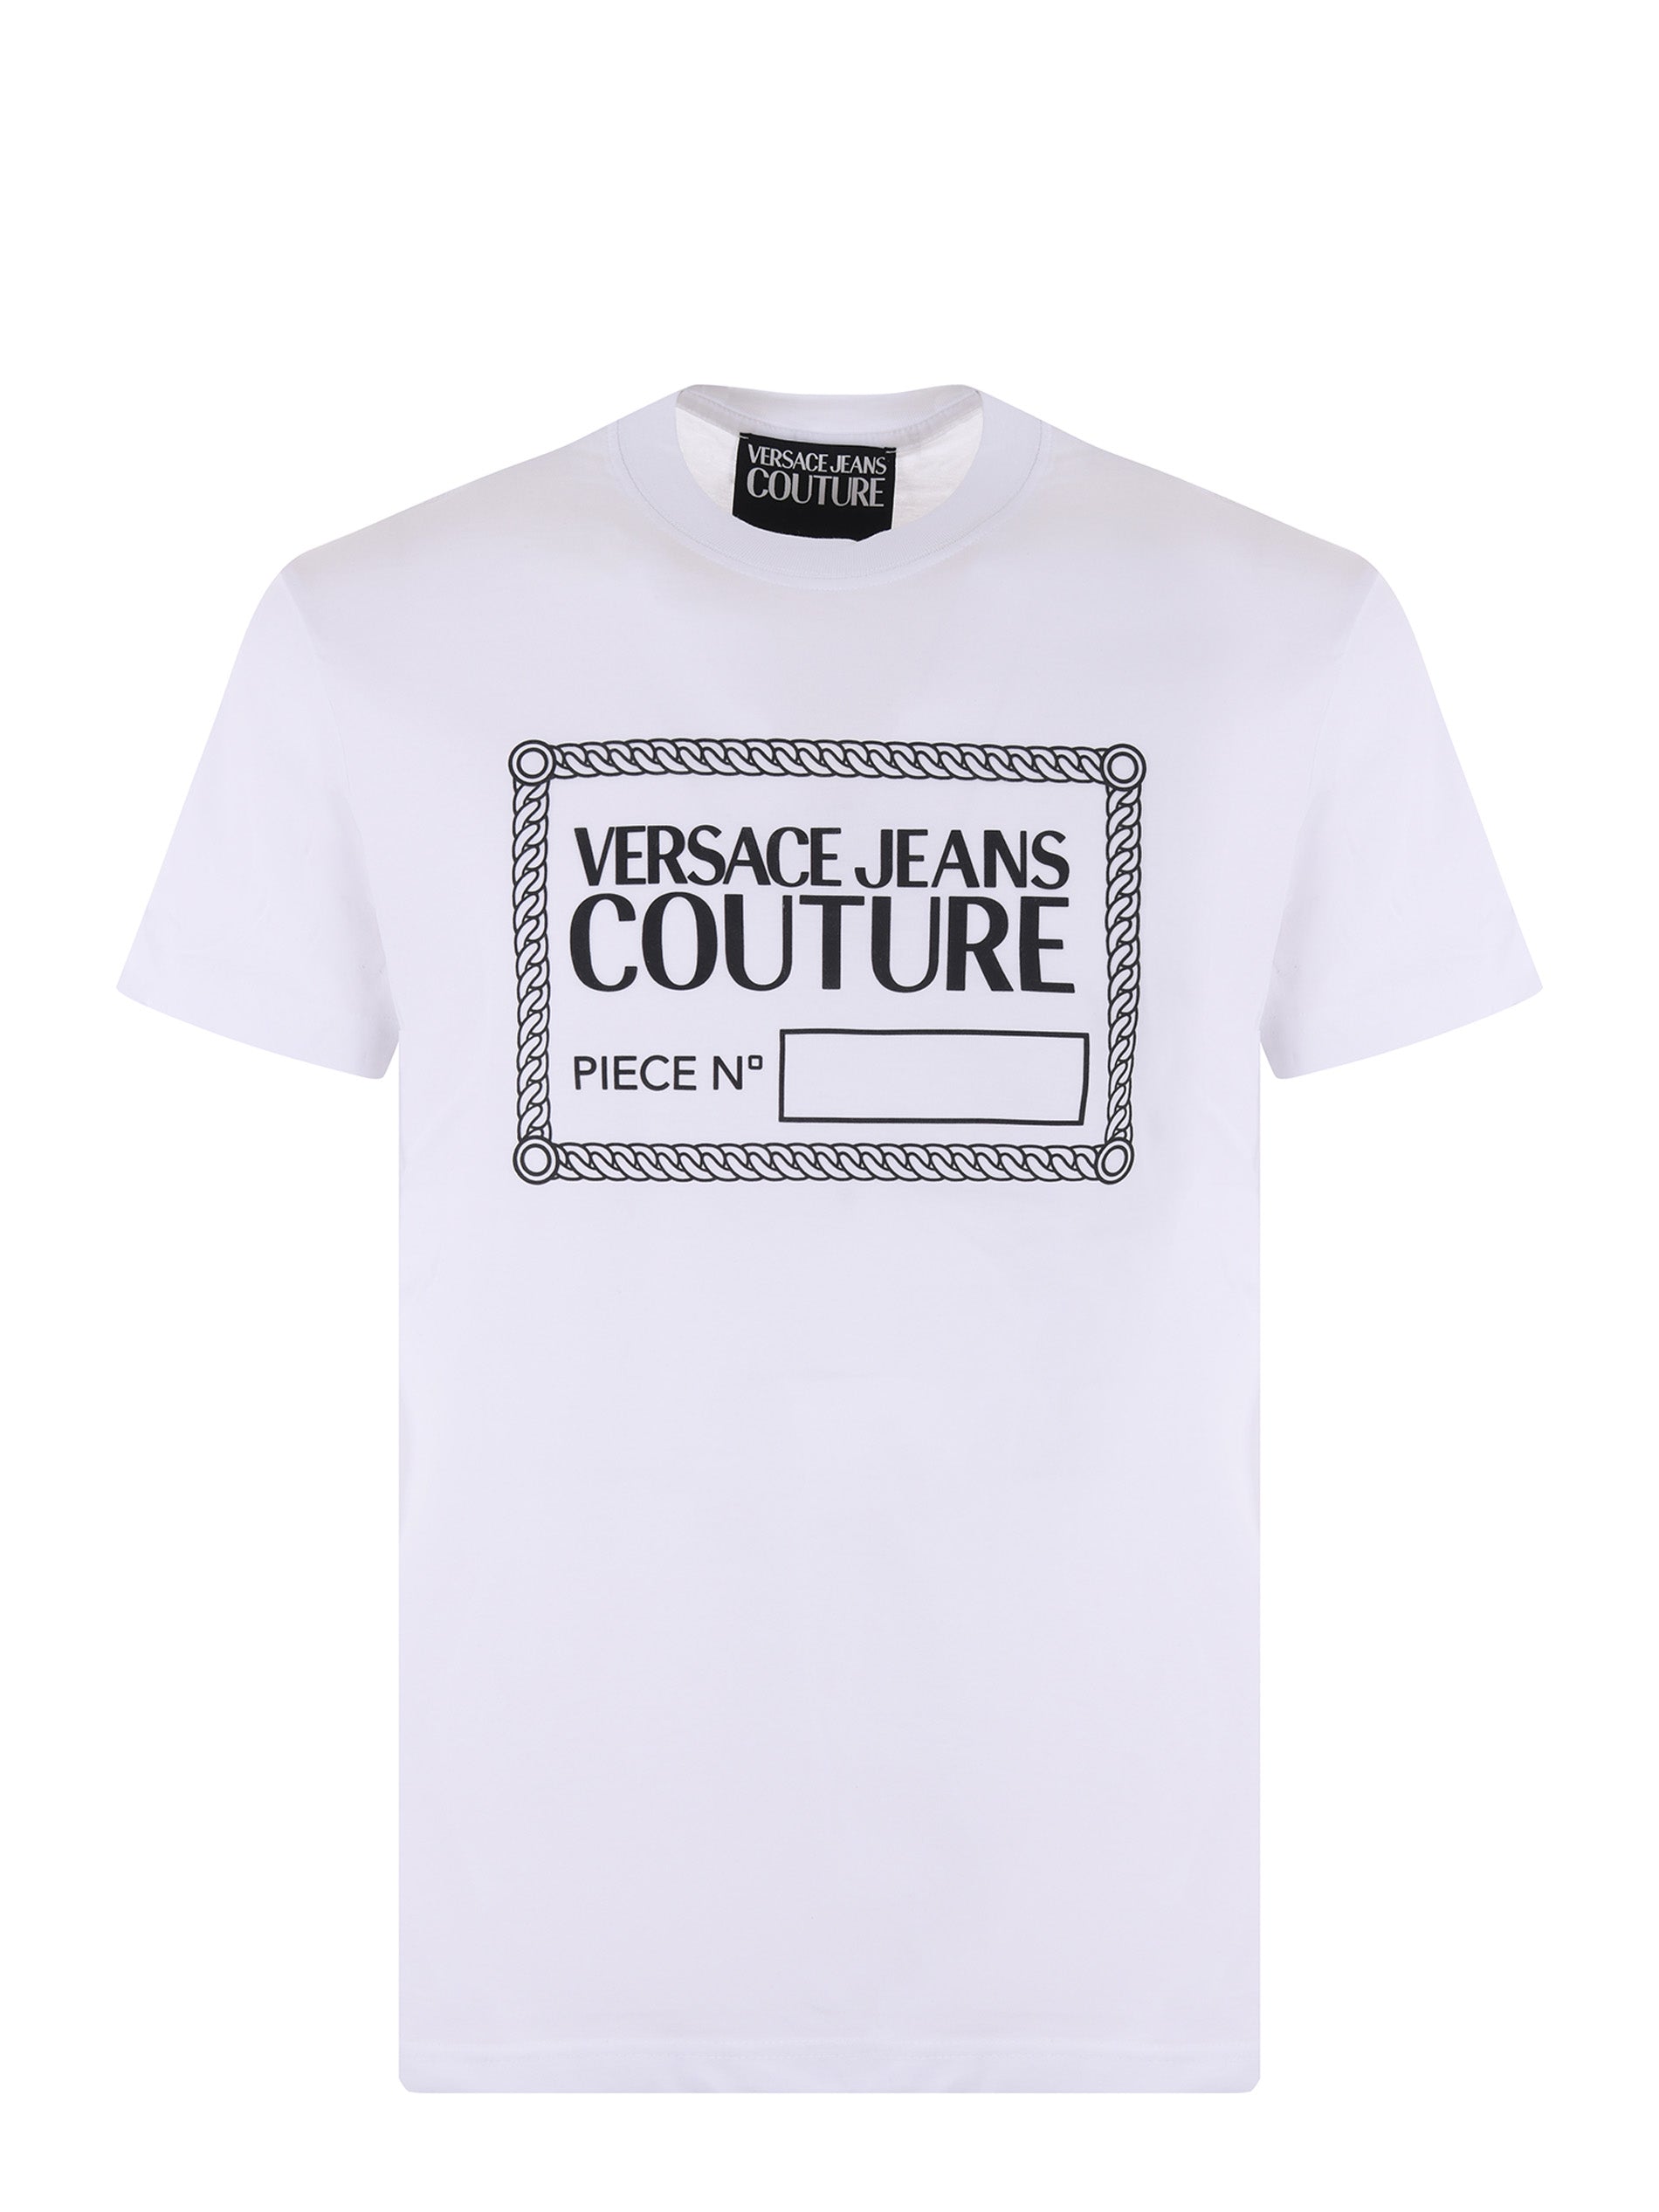 Shop Versace Jeans Couture Men's White Label Design Short Sleeve T-shirt